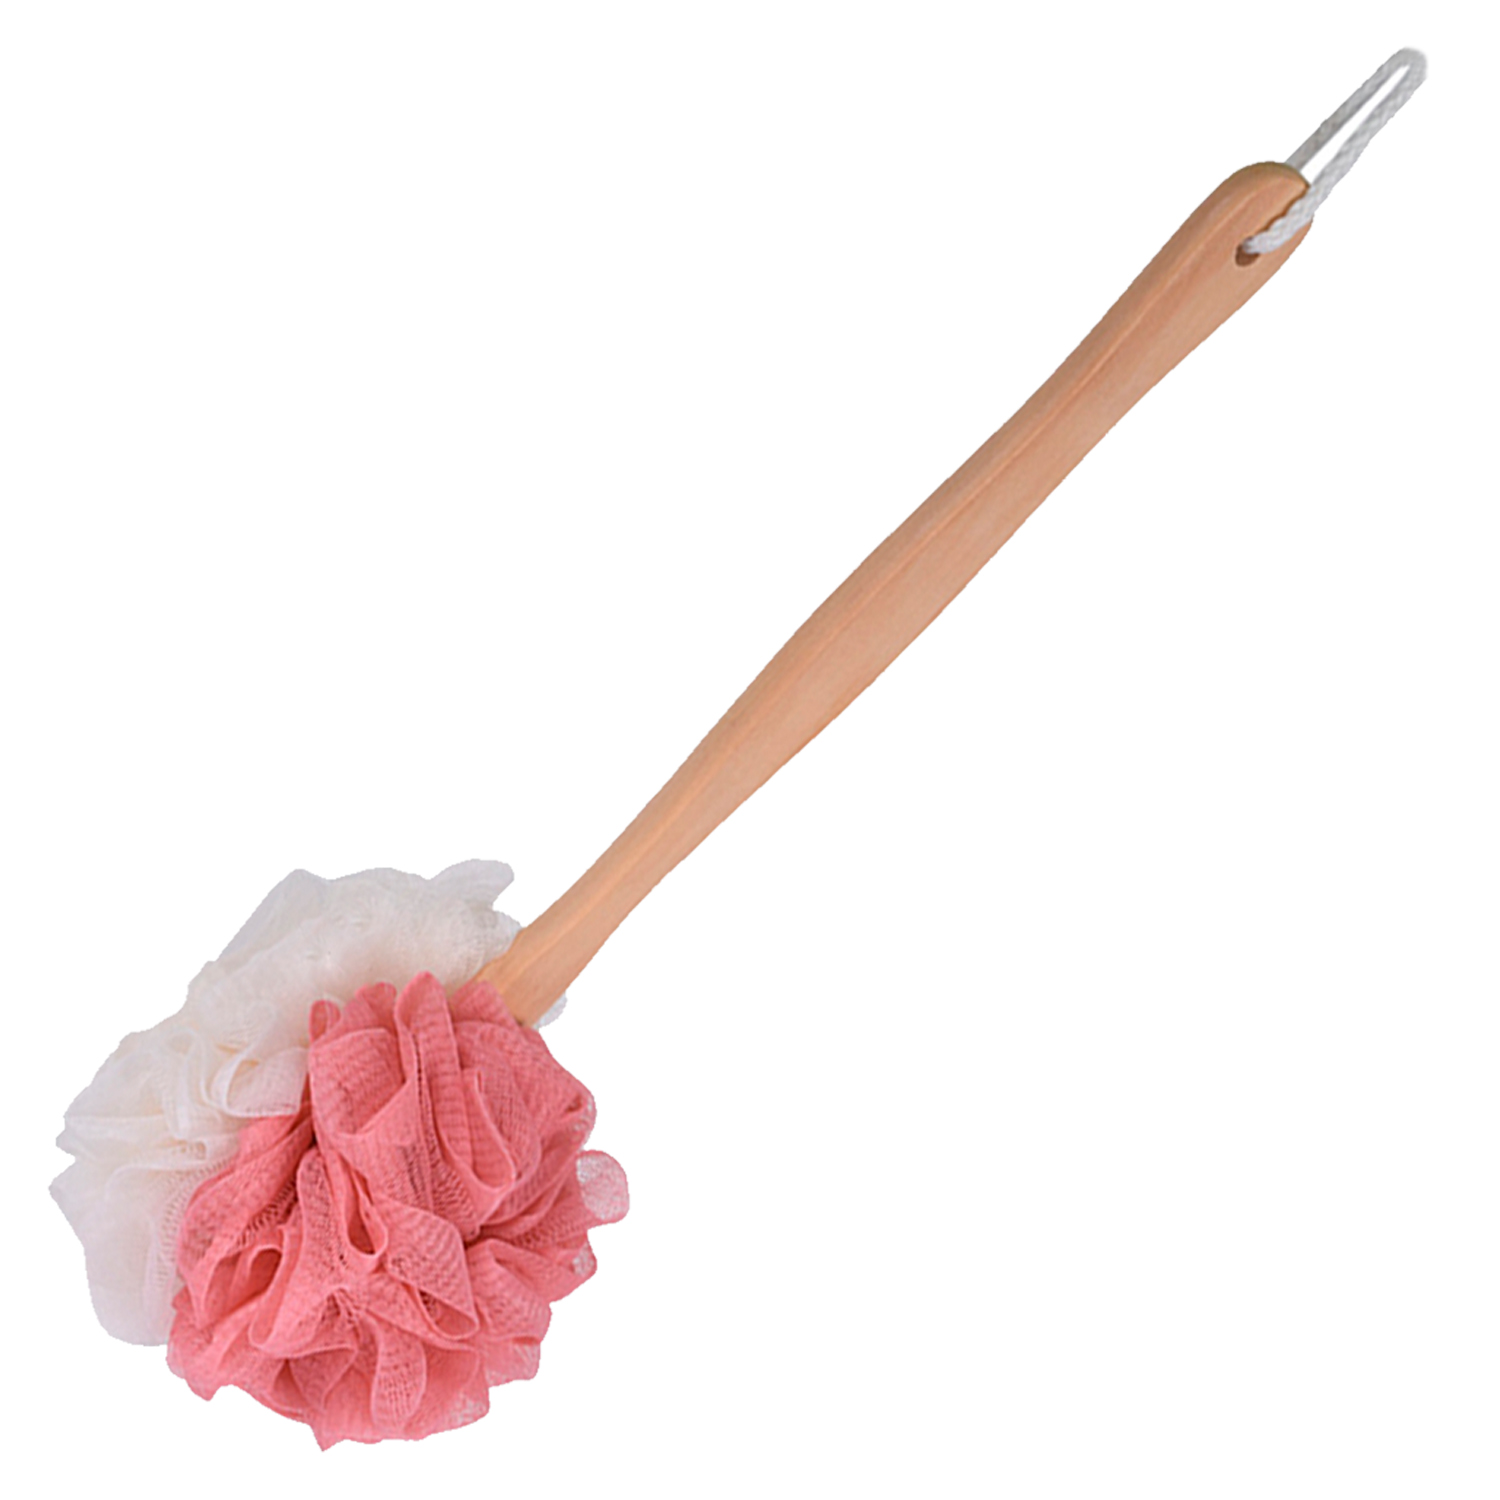 фото Мочалка venusshape, на деревянной ручке, цвет бежевый, розовый, 35х10 см